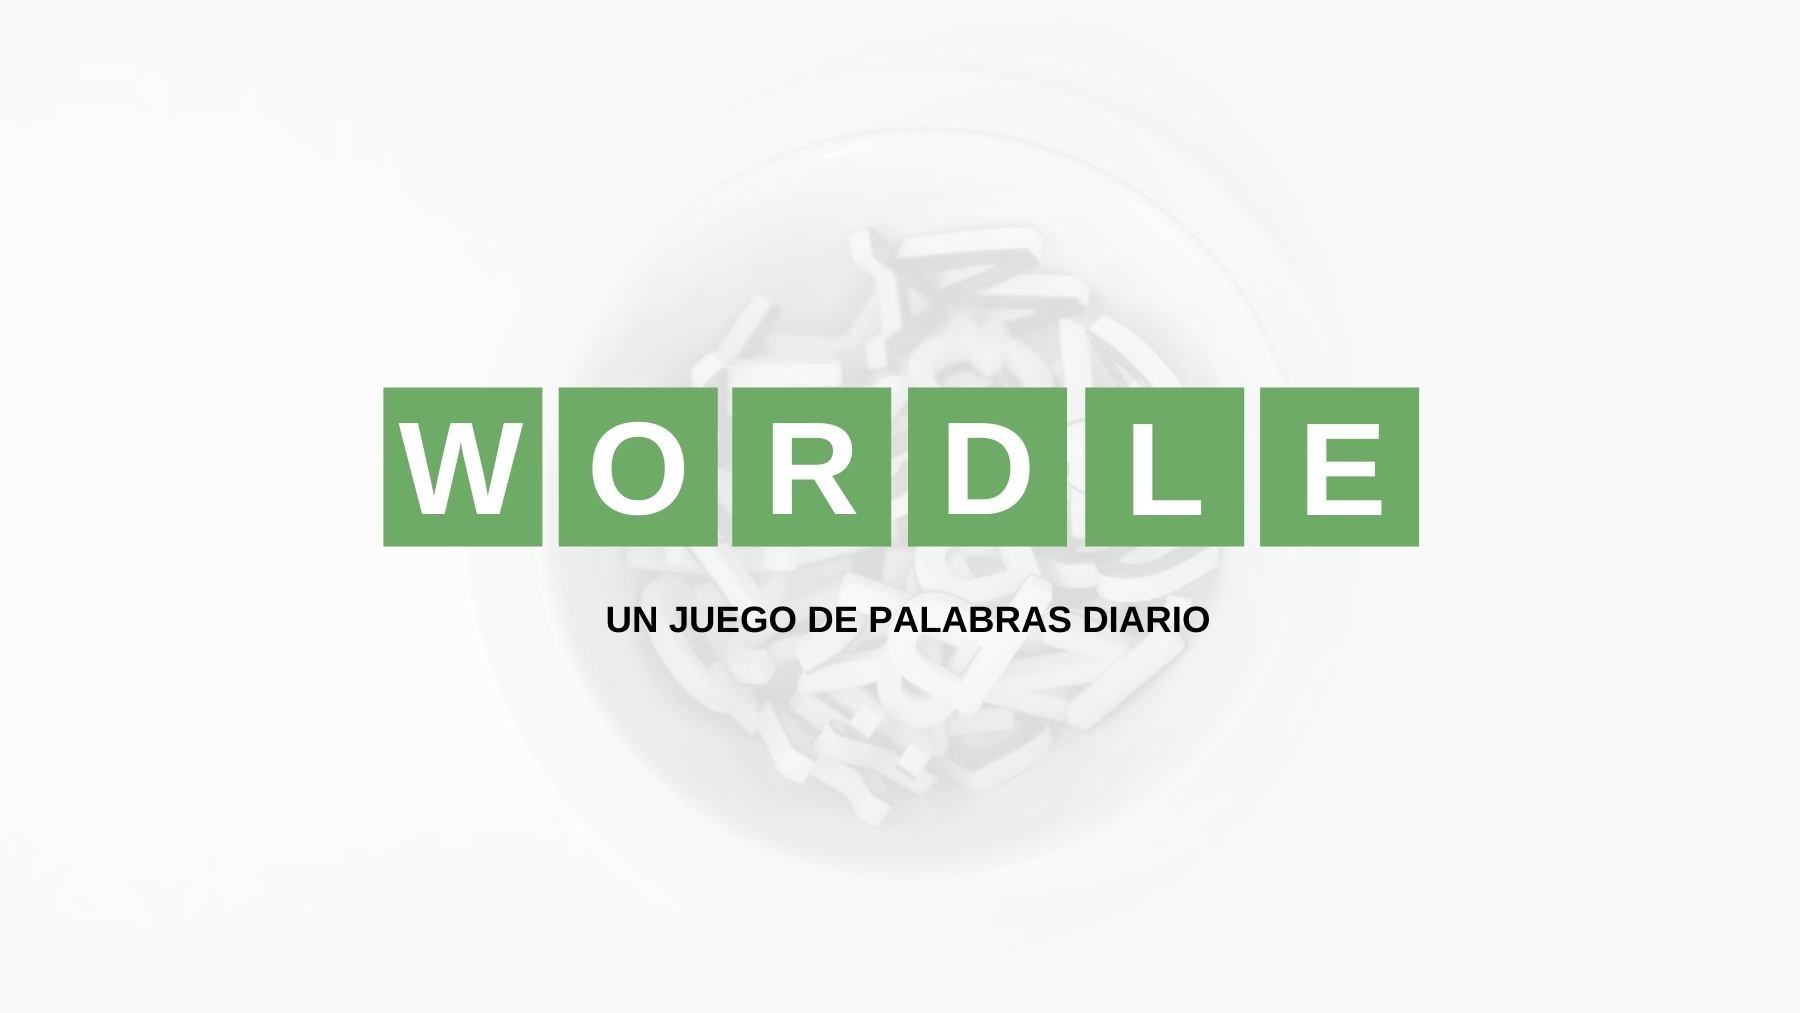 Solución palabra Wordle español, científico y con tildes hoy, jueves 14 de julio de 2022